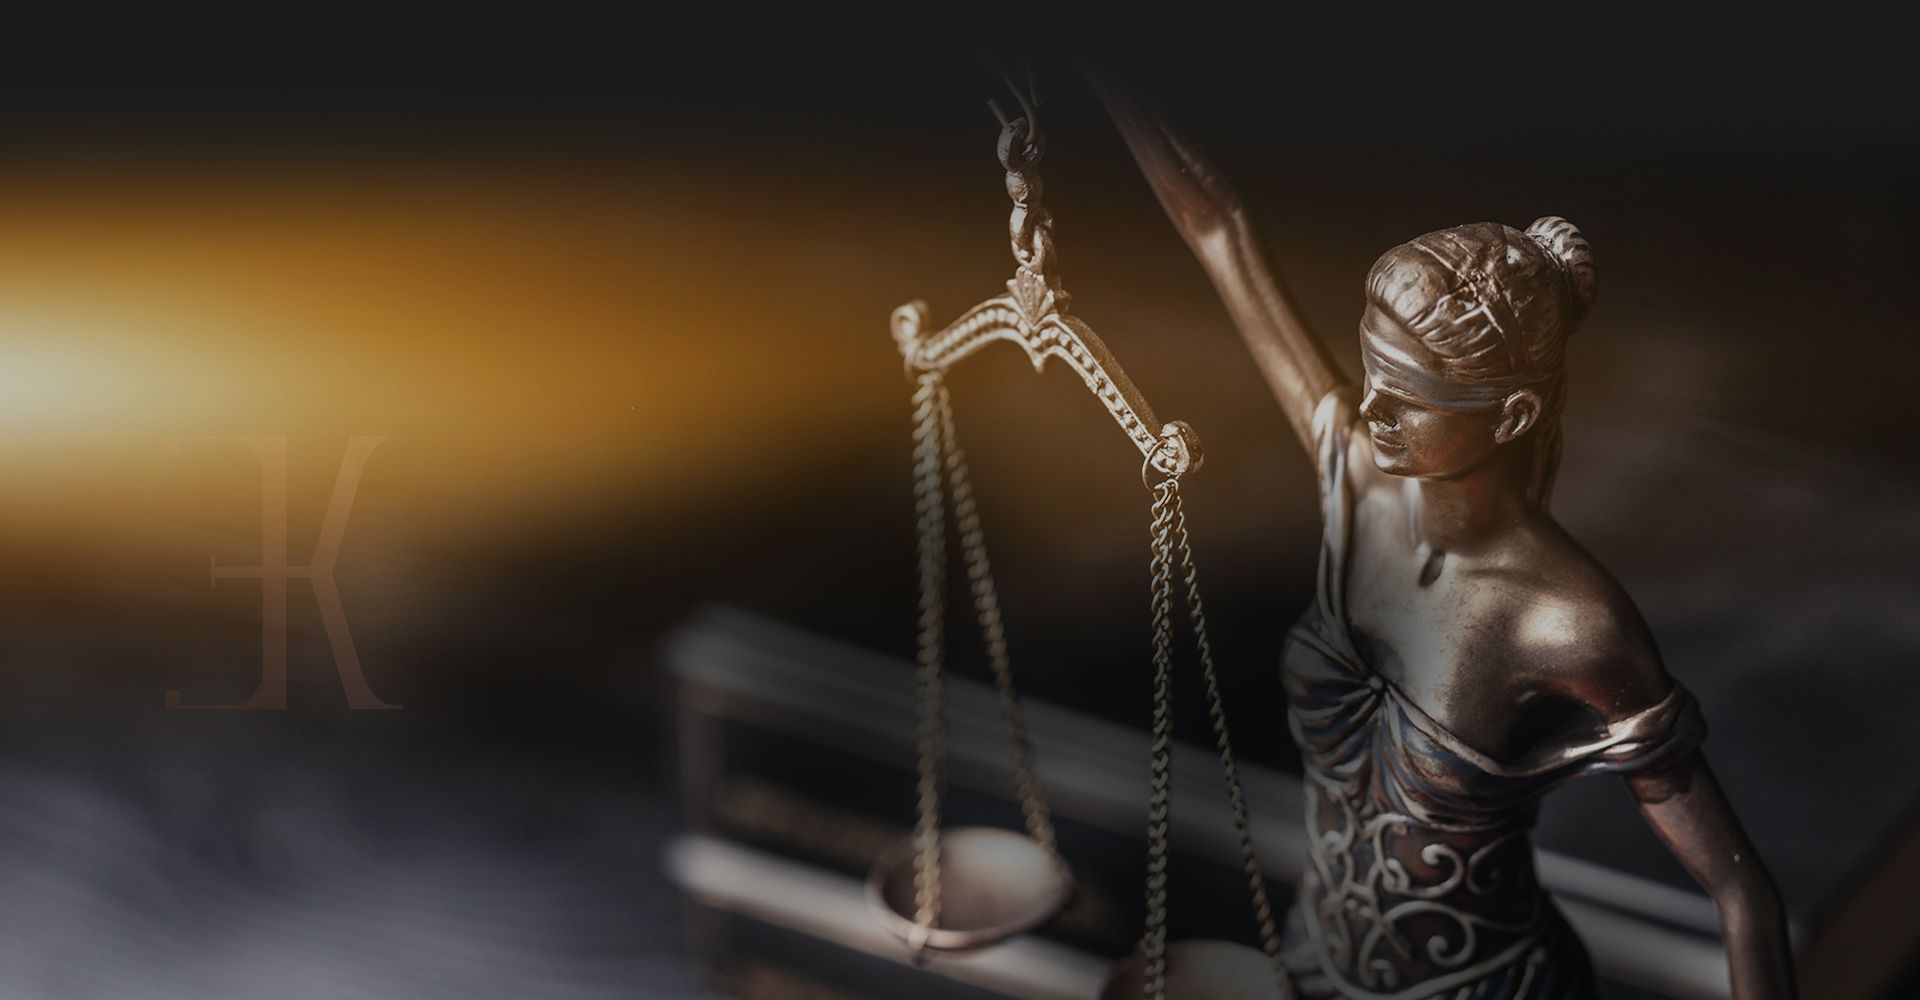 Elvan Kılıç Hukuk & Danışmanlık - IN ALL FIELDS OF LAW